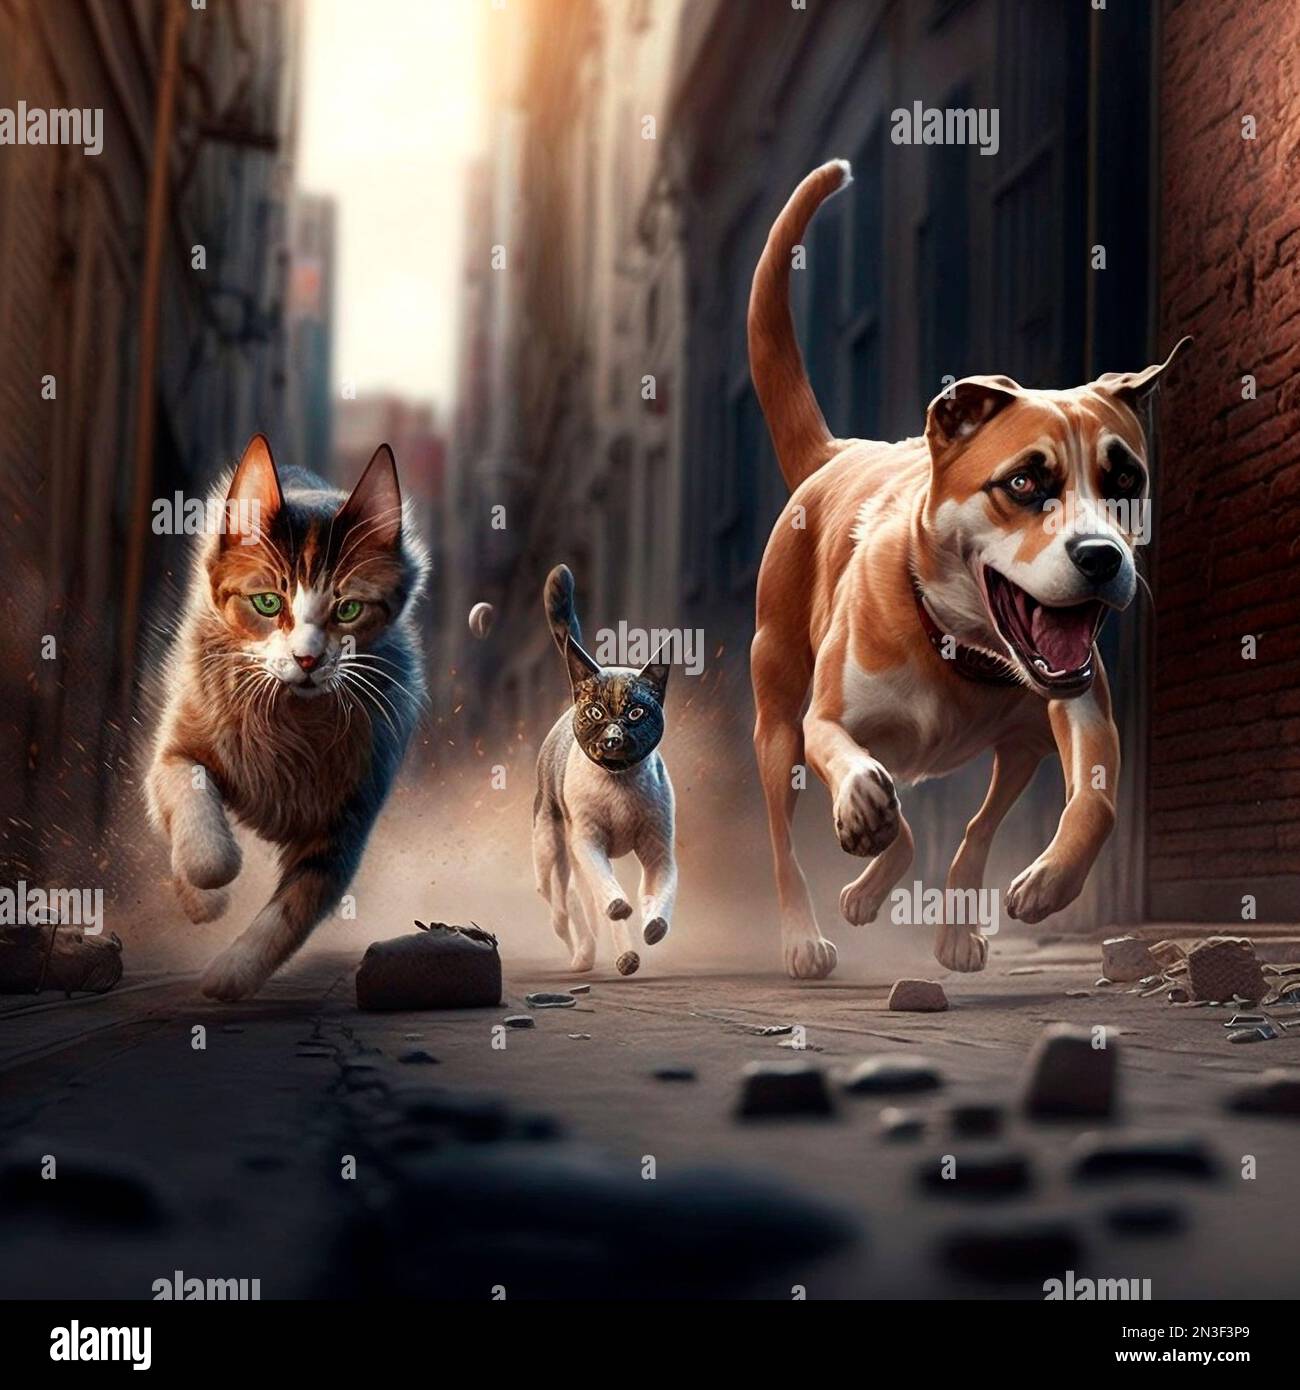 Künstliche Intelligenz erzeugt ein Bild der wilden Straßenhunde und Katzen,  die auf der Straße laufen Stockfotografie - Alamy